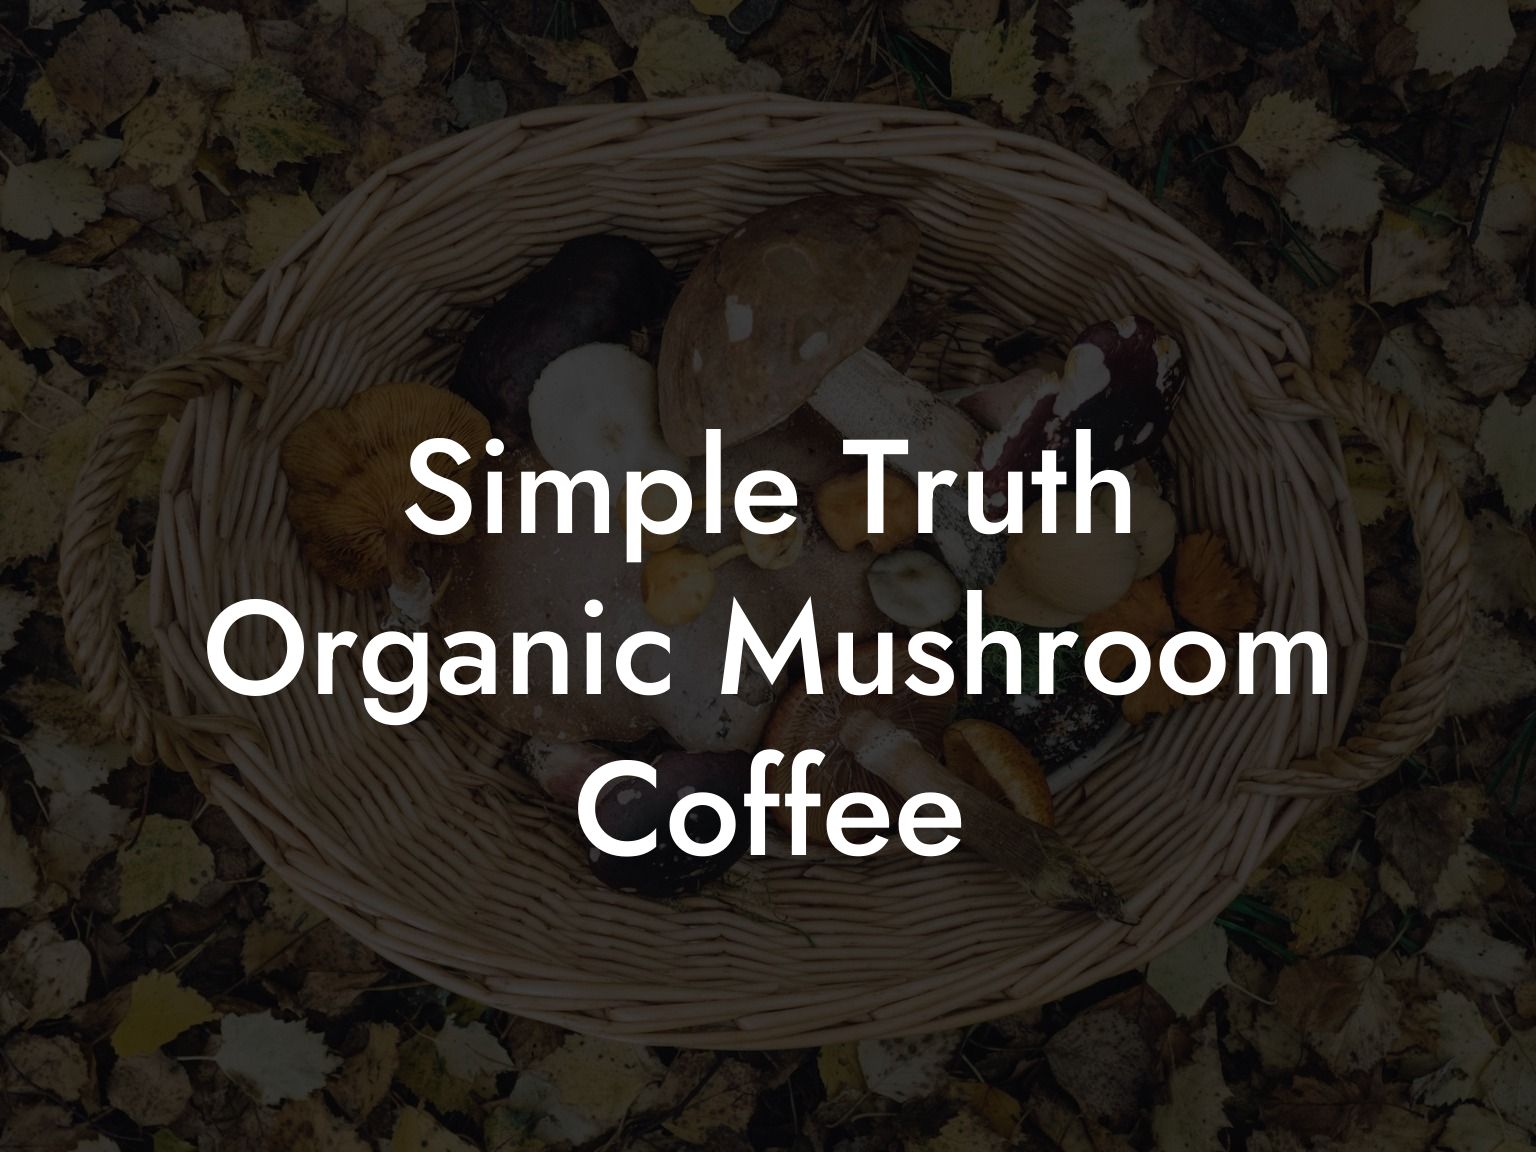 Simple Truth Organic Mushroom Coffee